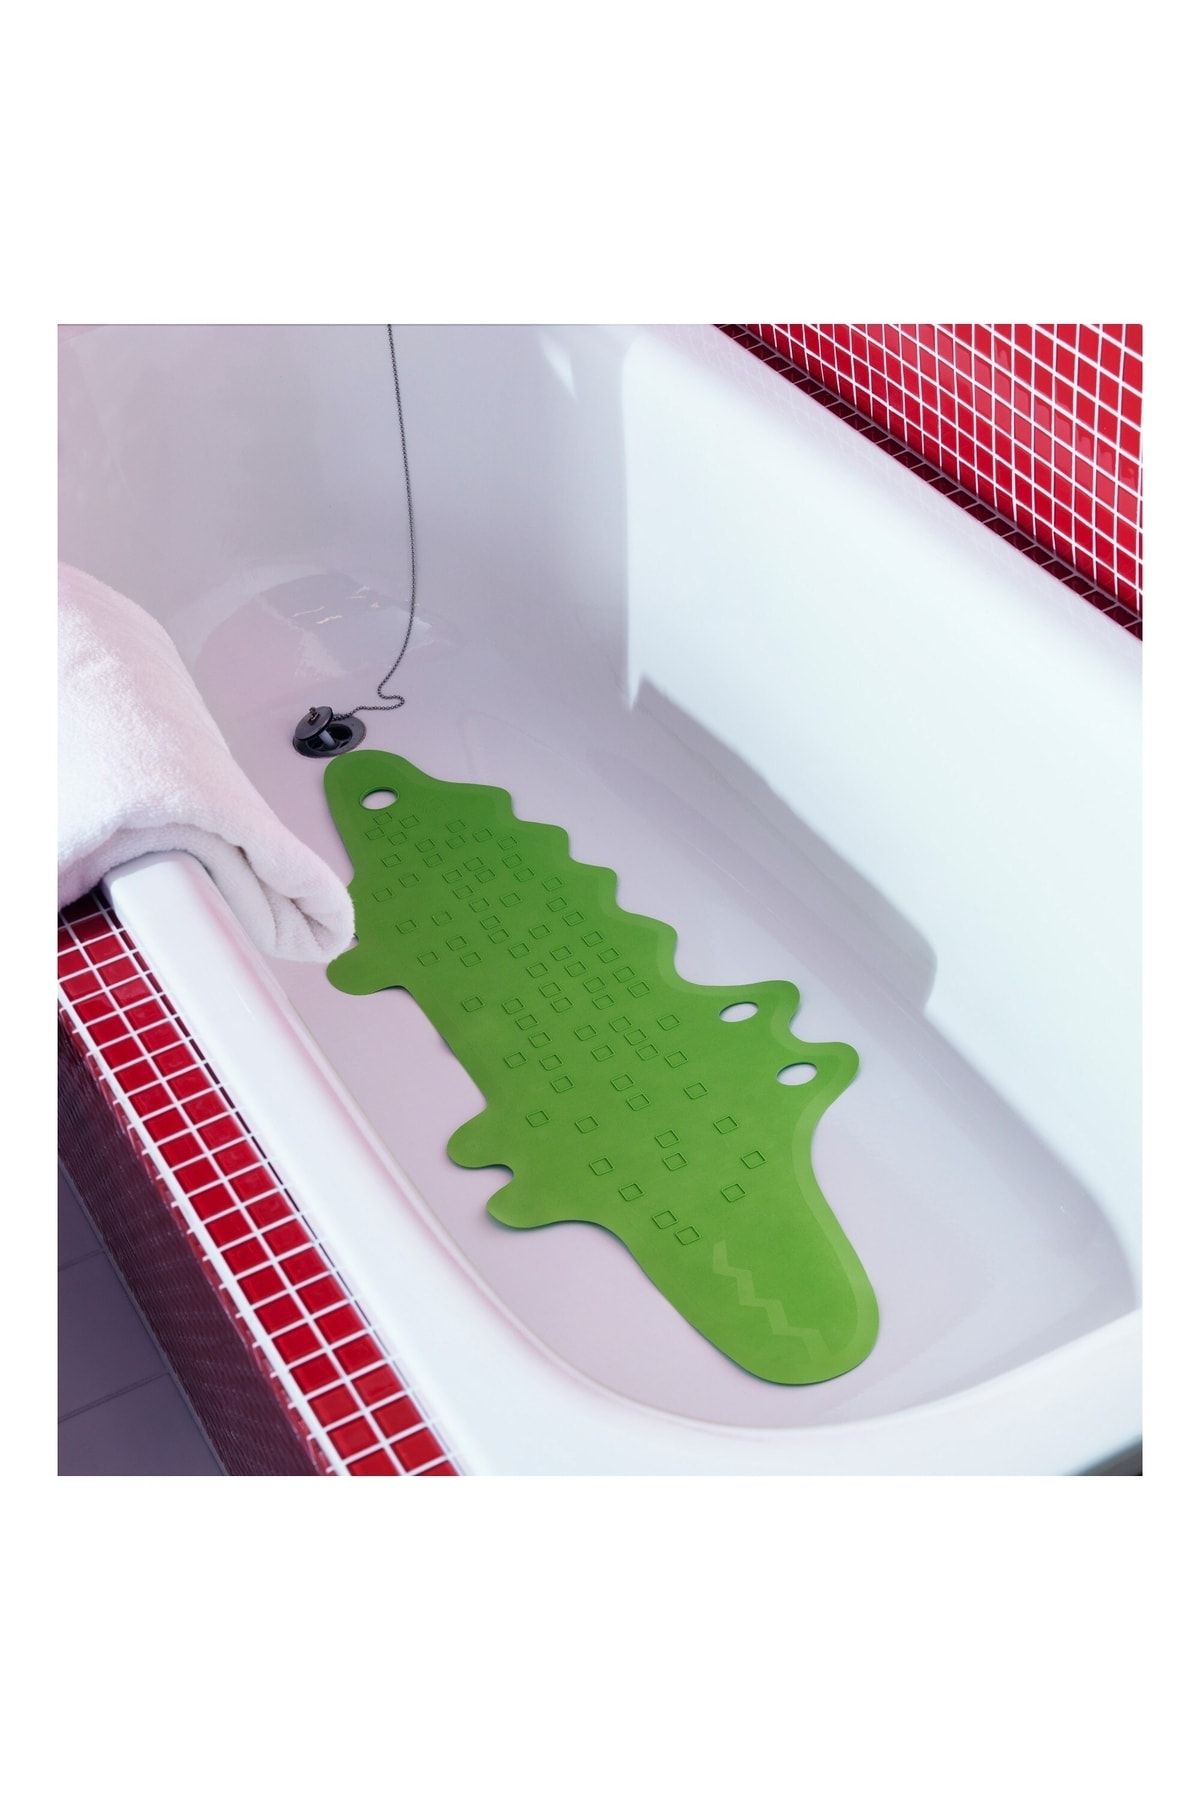 IKEA Banyo Kaydırmazı Vantuzlu Küvet Paspası 33x90 Cm